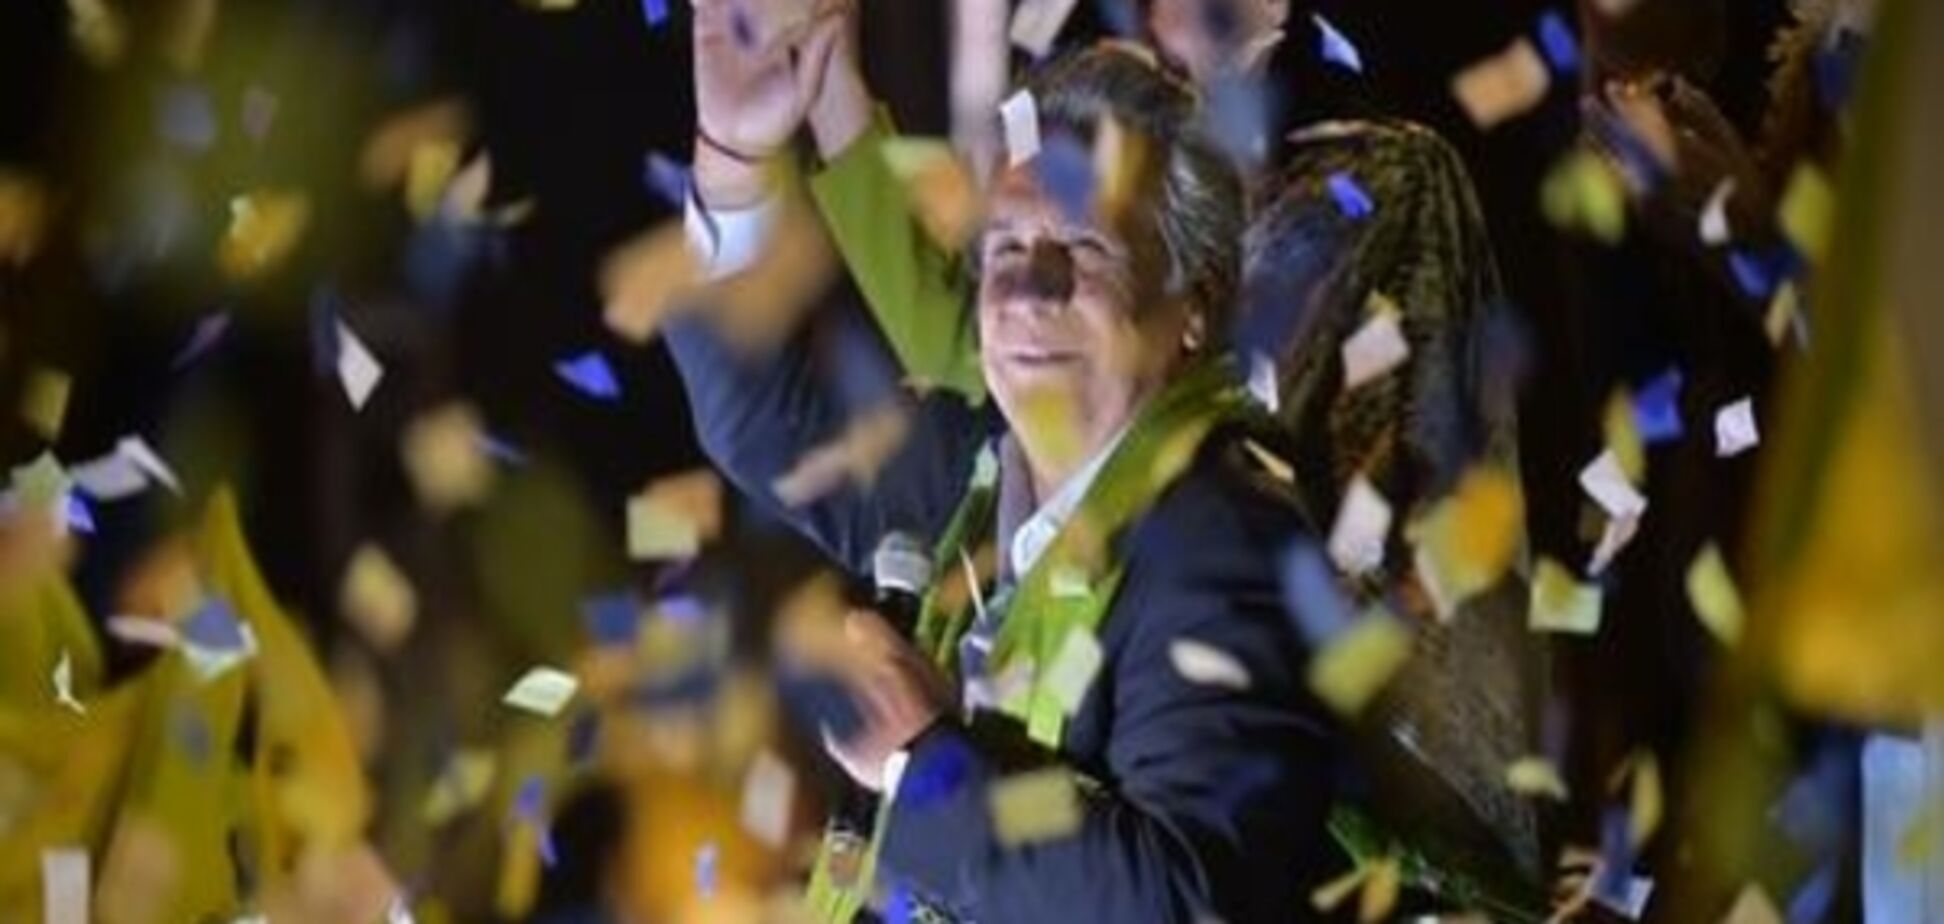 Еквадор: перемогу на президентських виборах неочікувано здобуває провладний кандидат